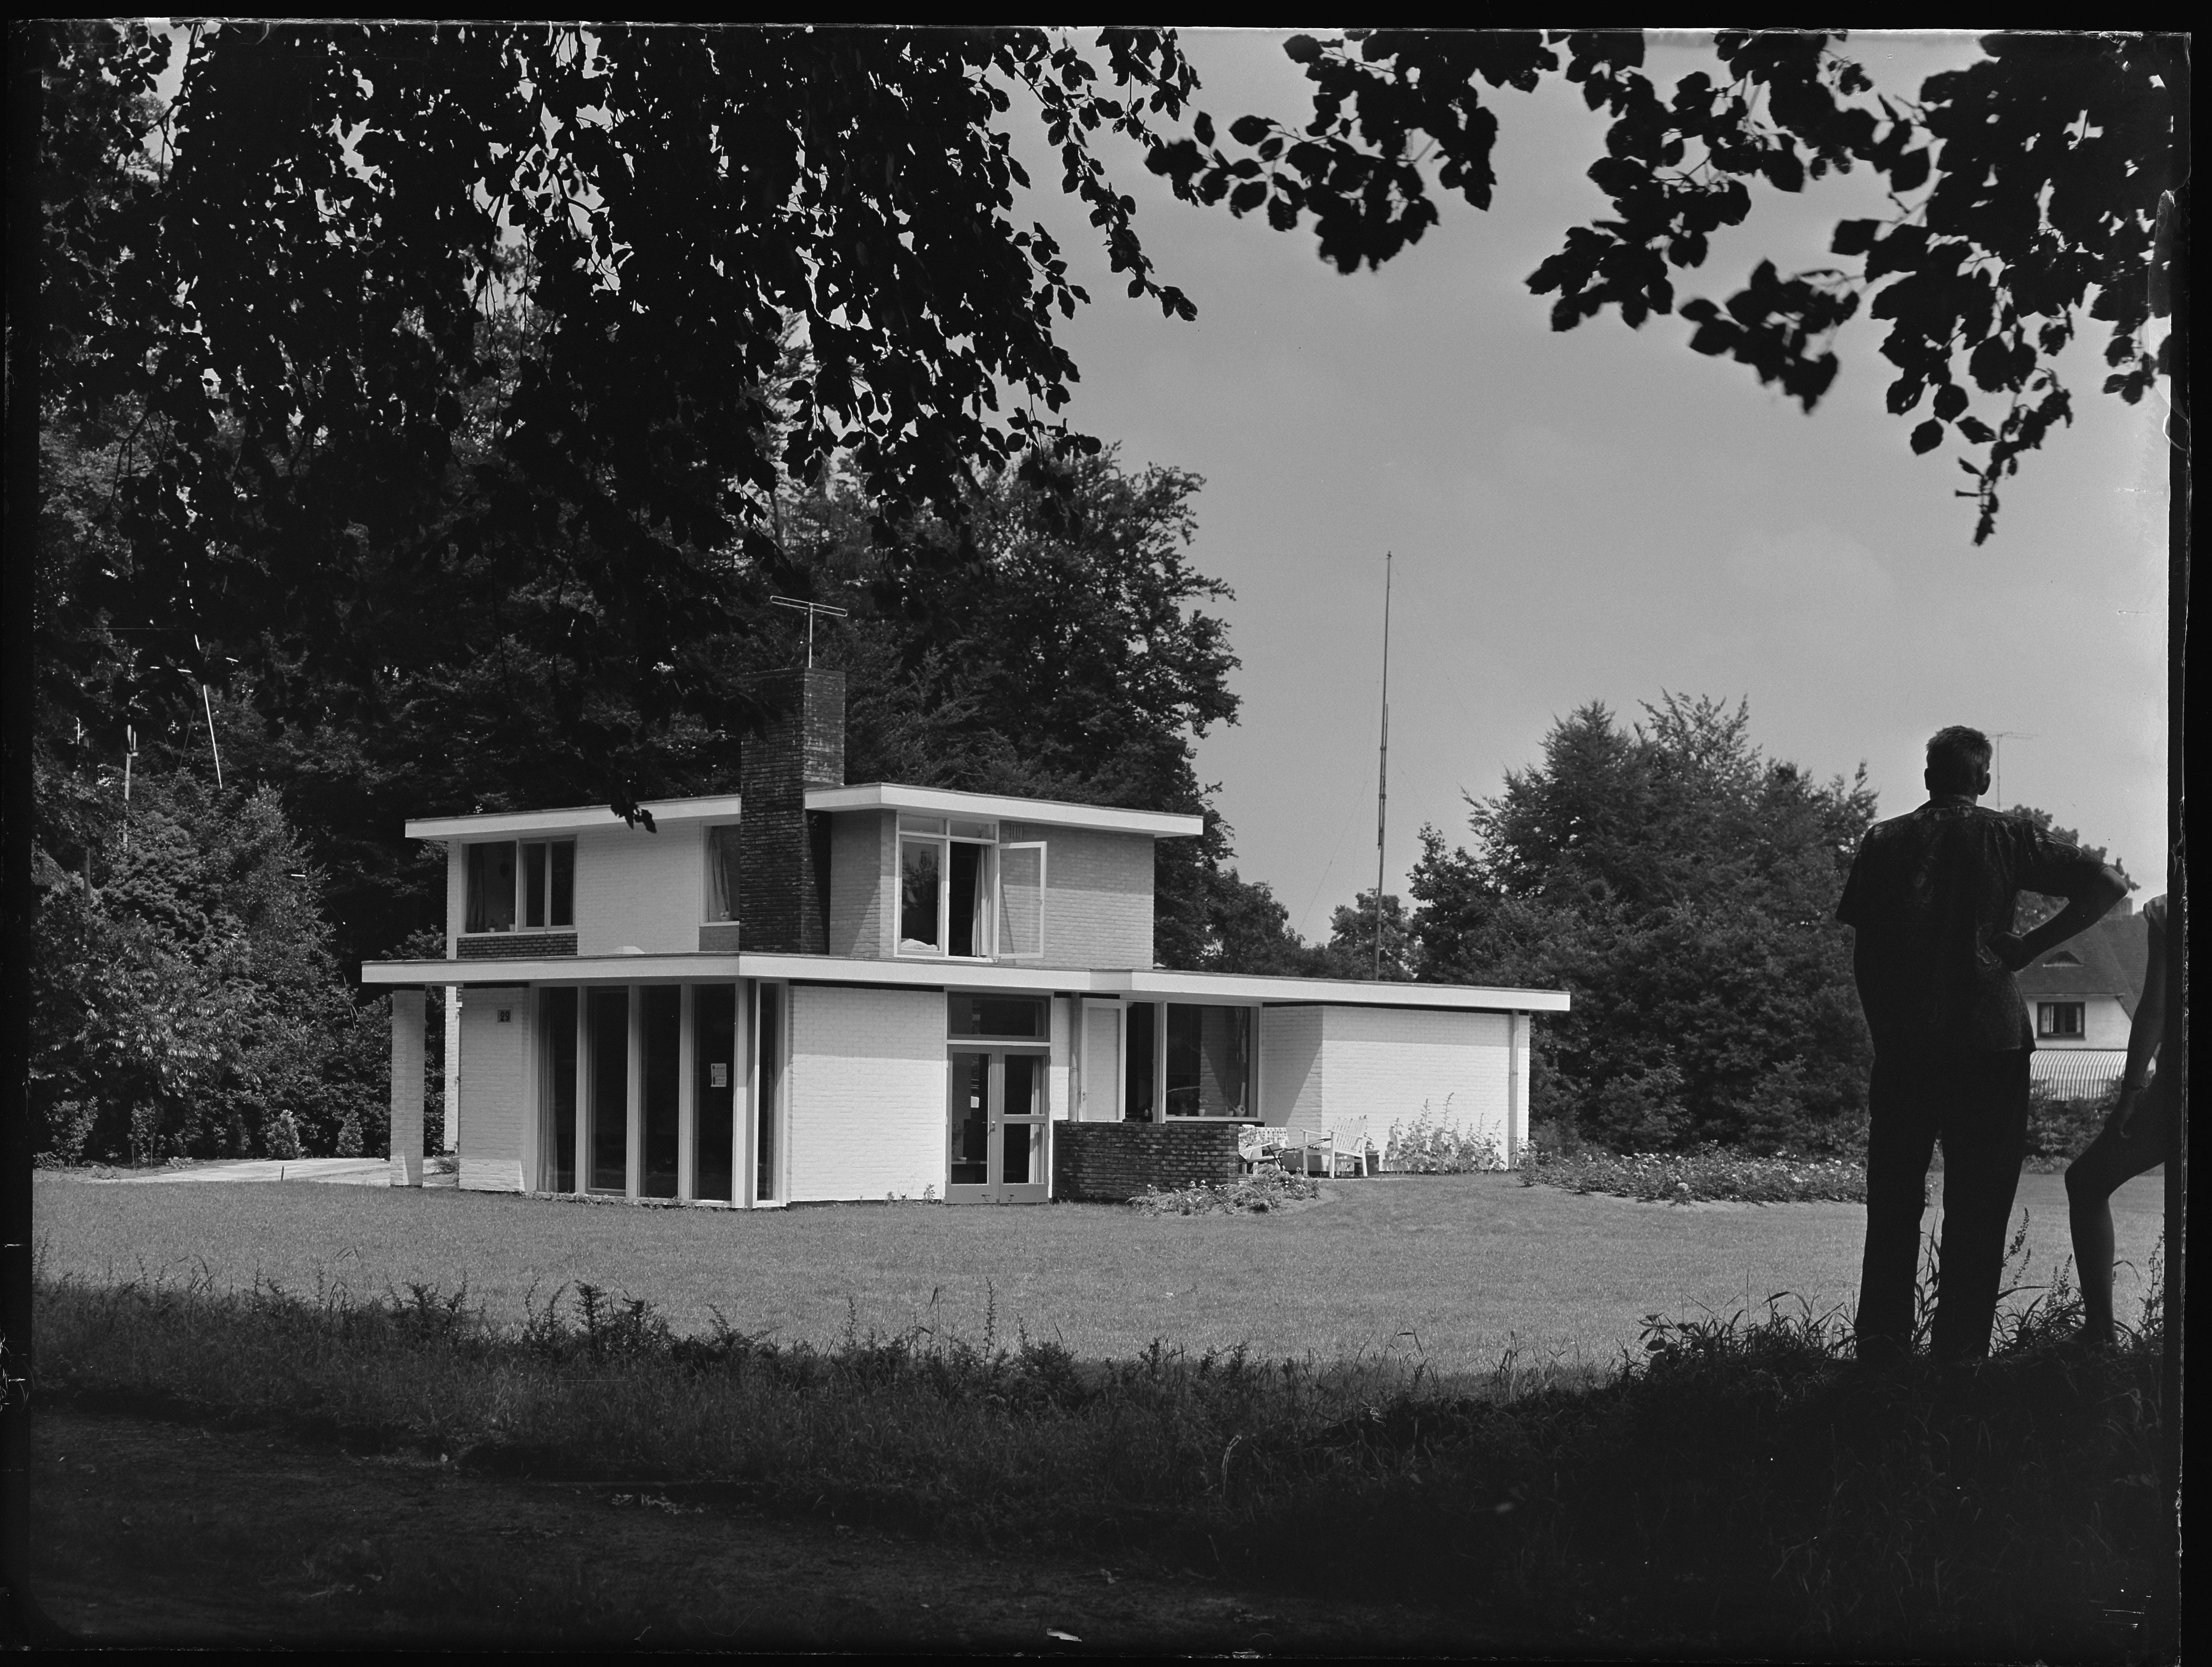 Vrijstaand huis van twee verdiepngen met plat dak, rechts staan twee mannen het huis te bekijken.